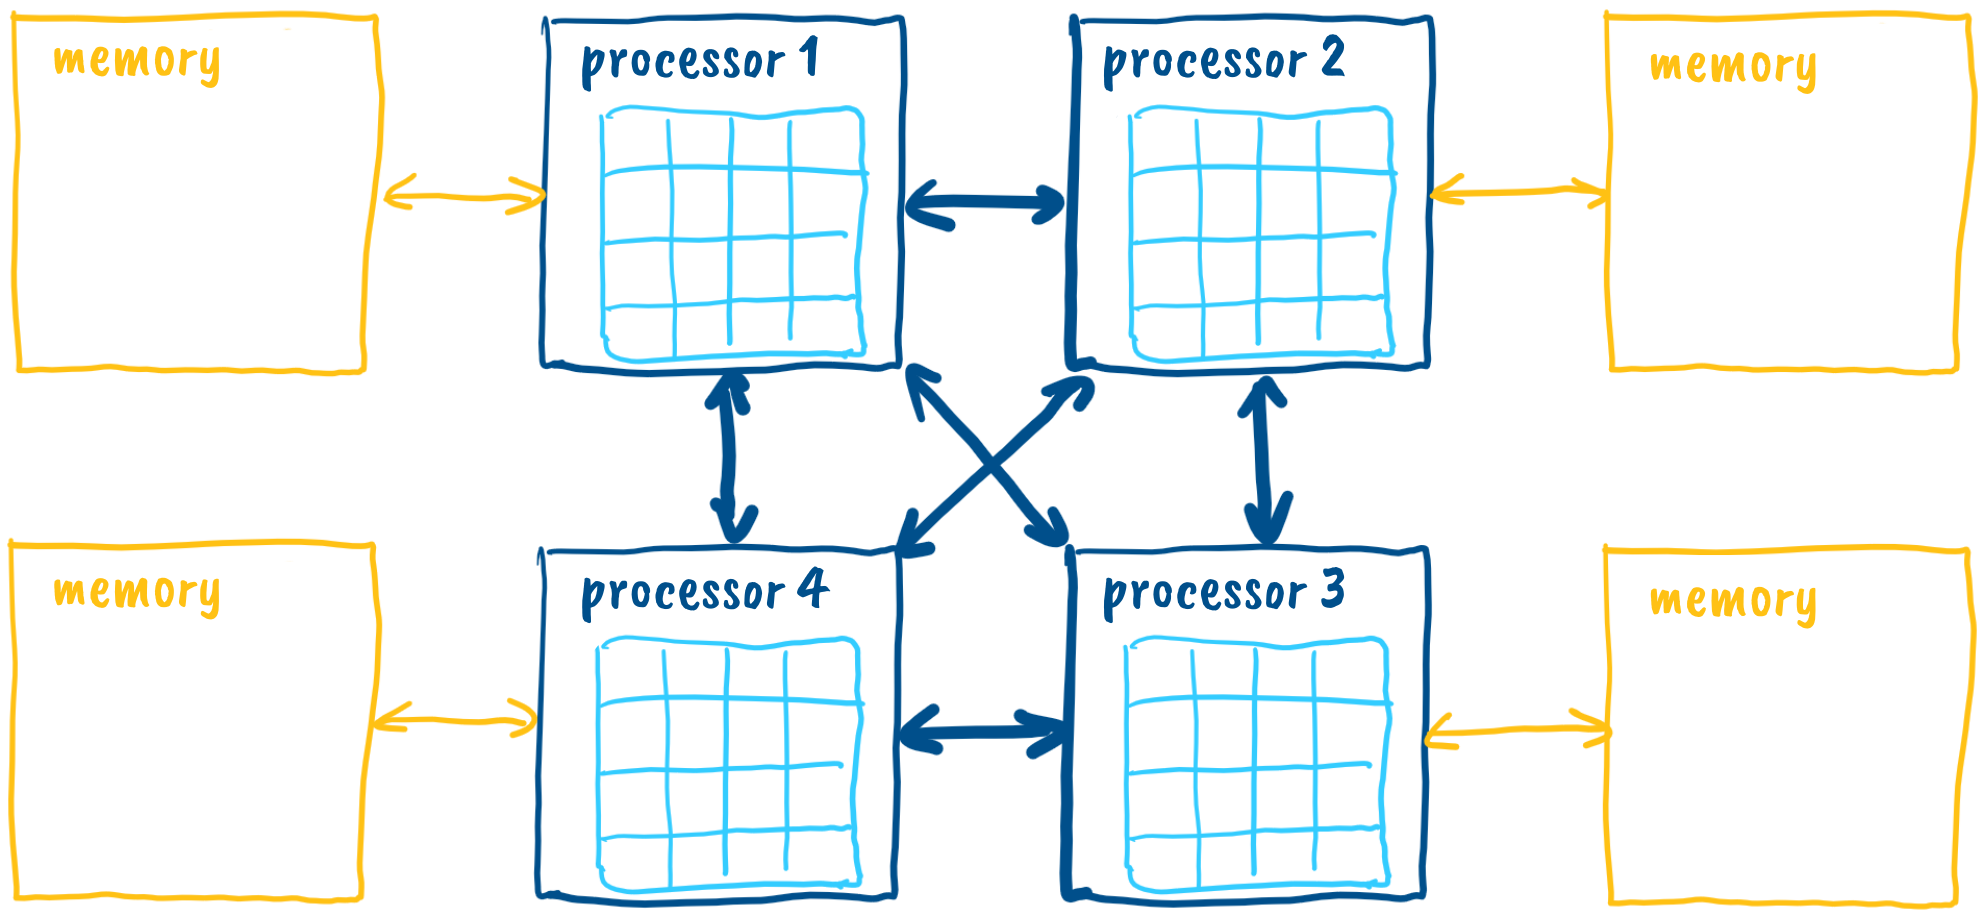 Multicore processor